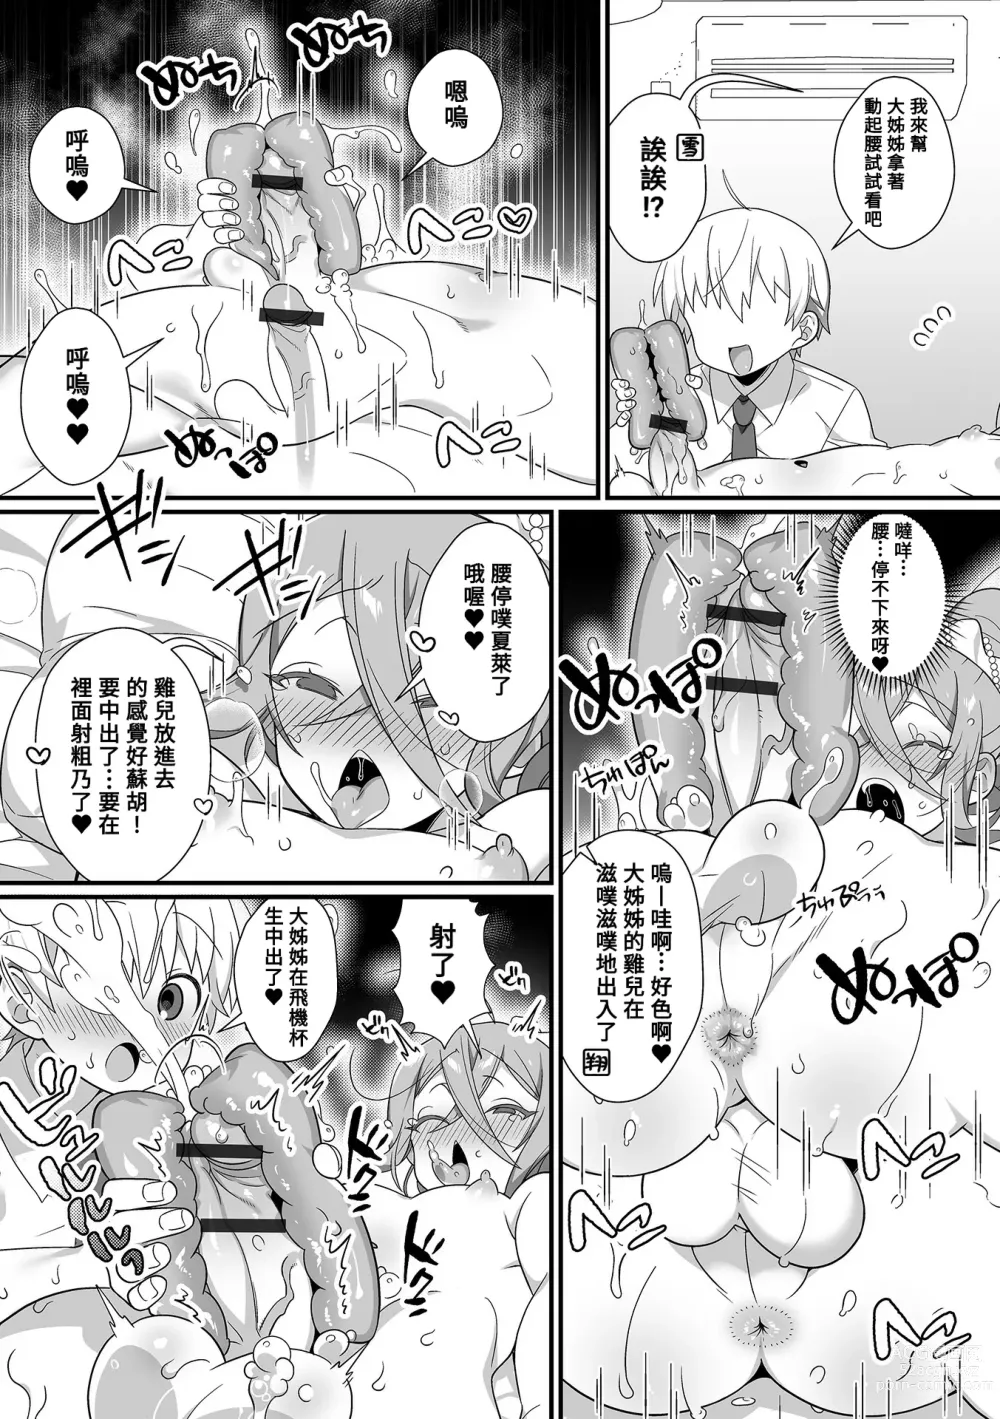 Page 6 of manga Kireina Onesan♂ wa Sukidesuka?